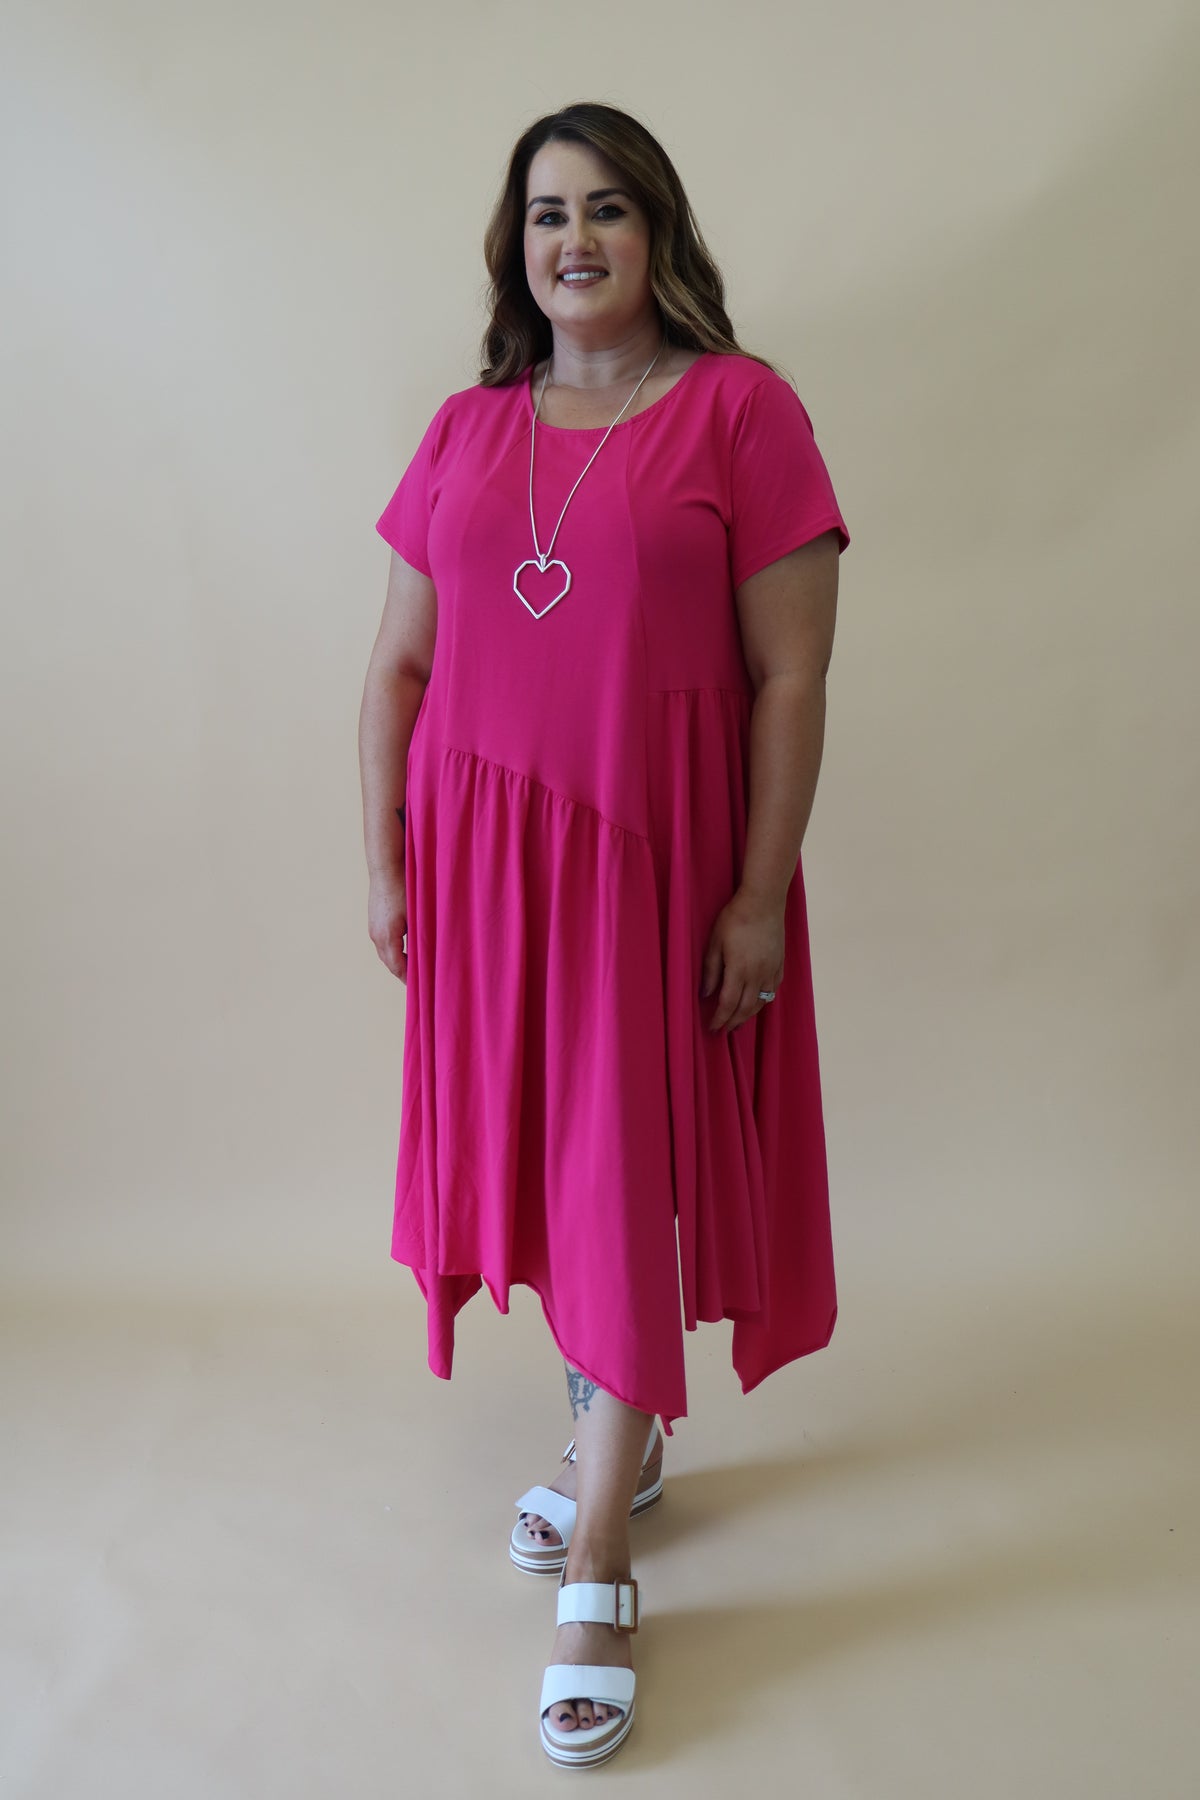 Tessa Dress in Pink